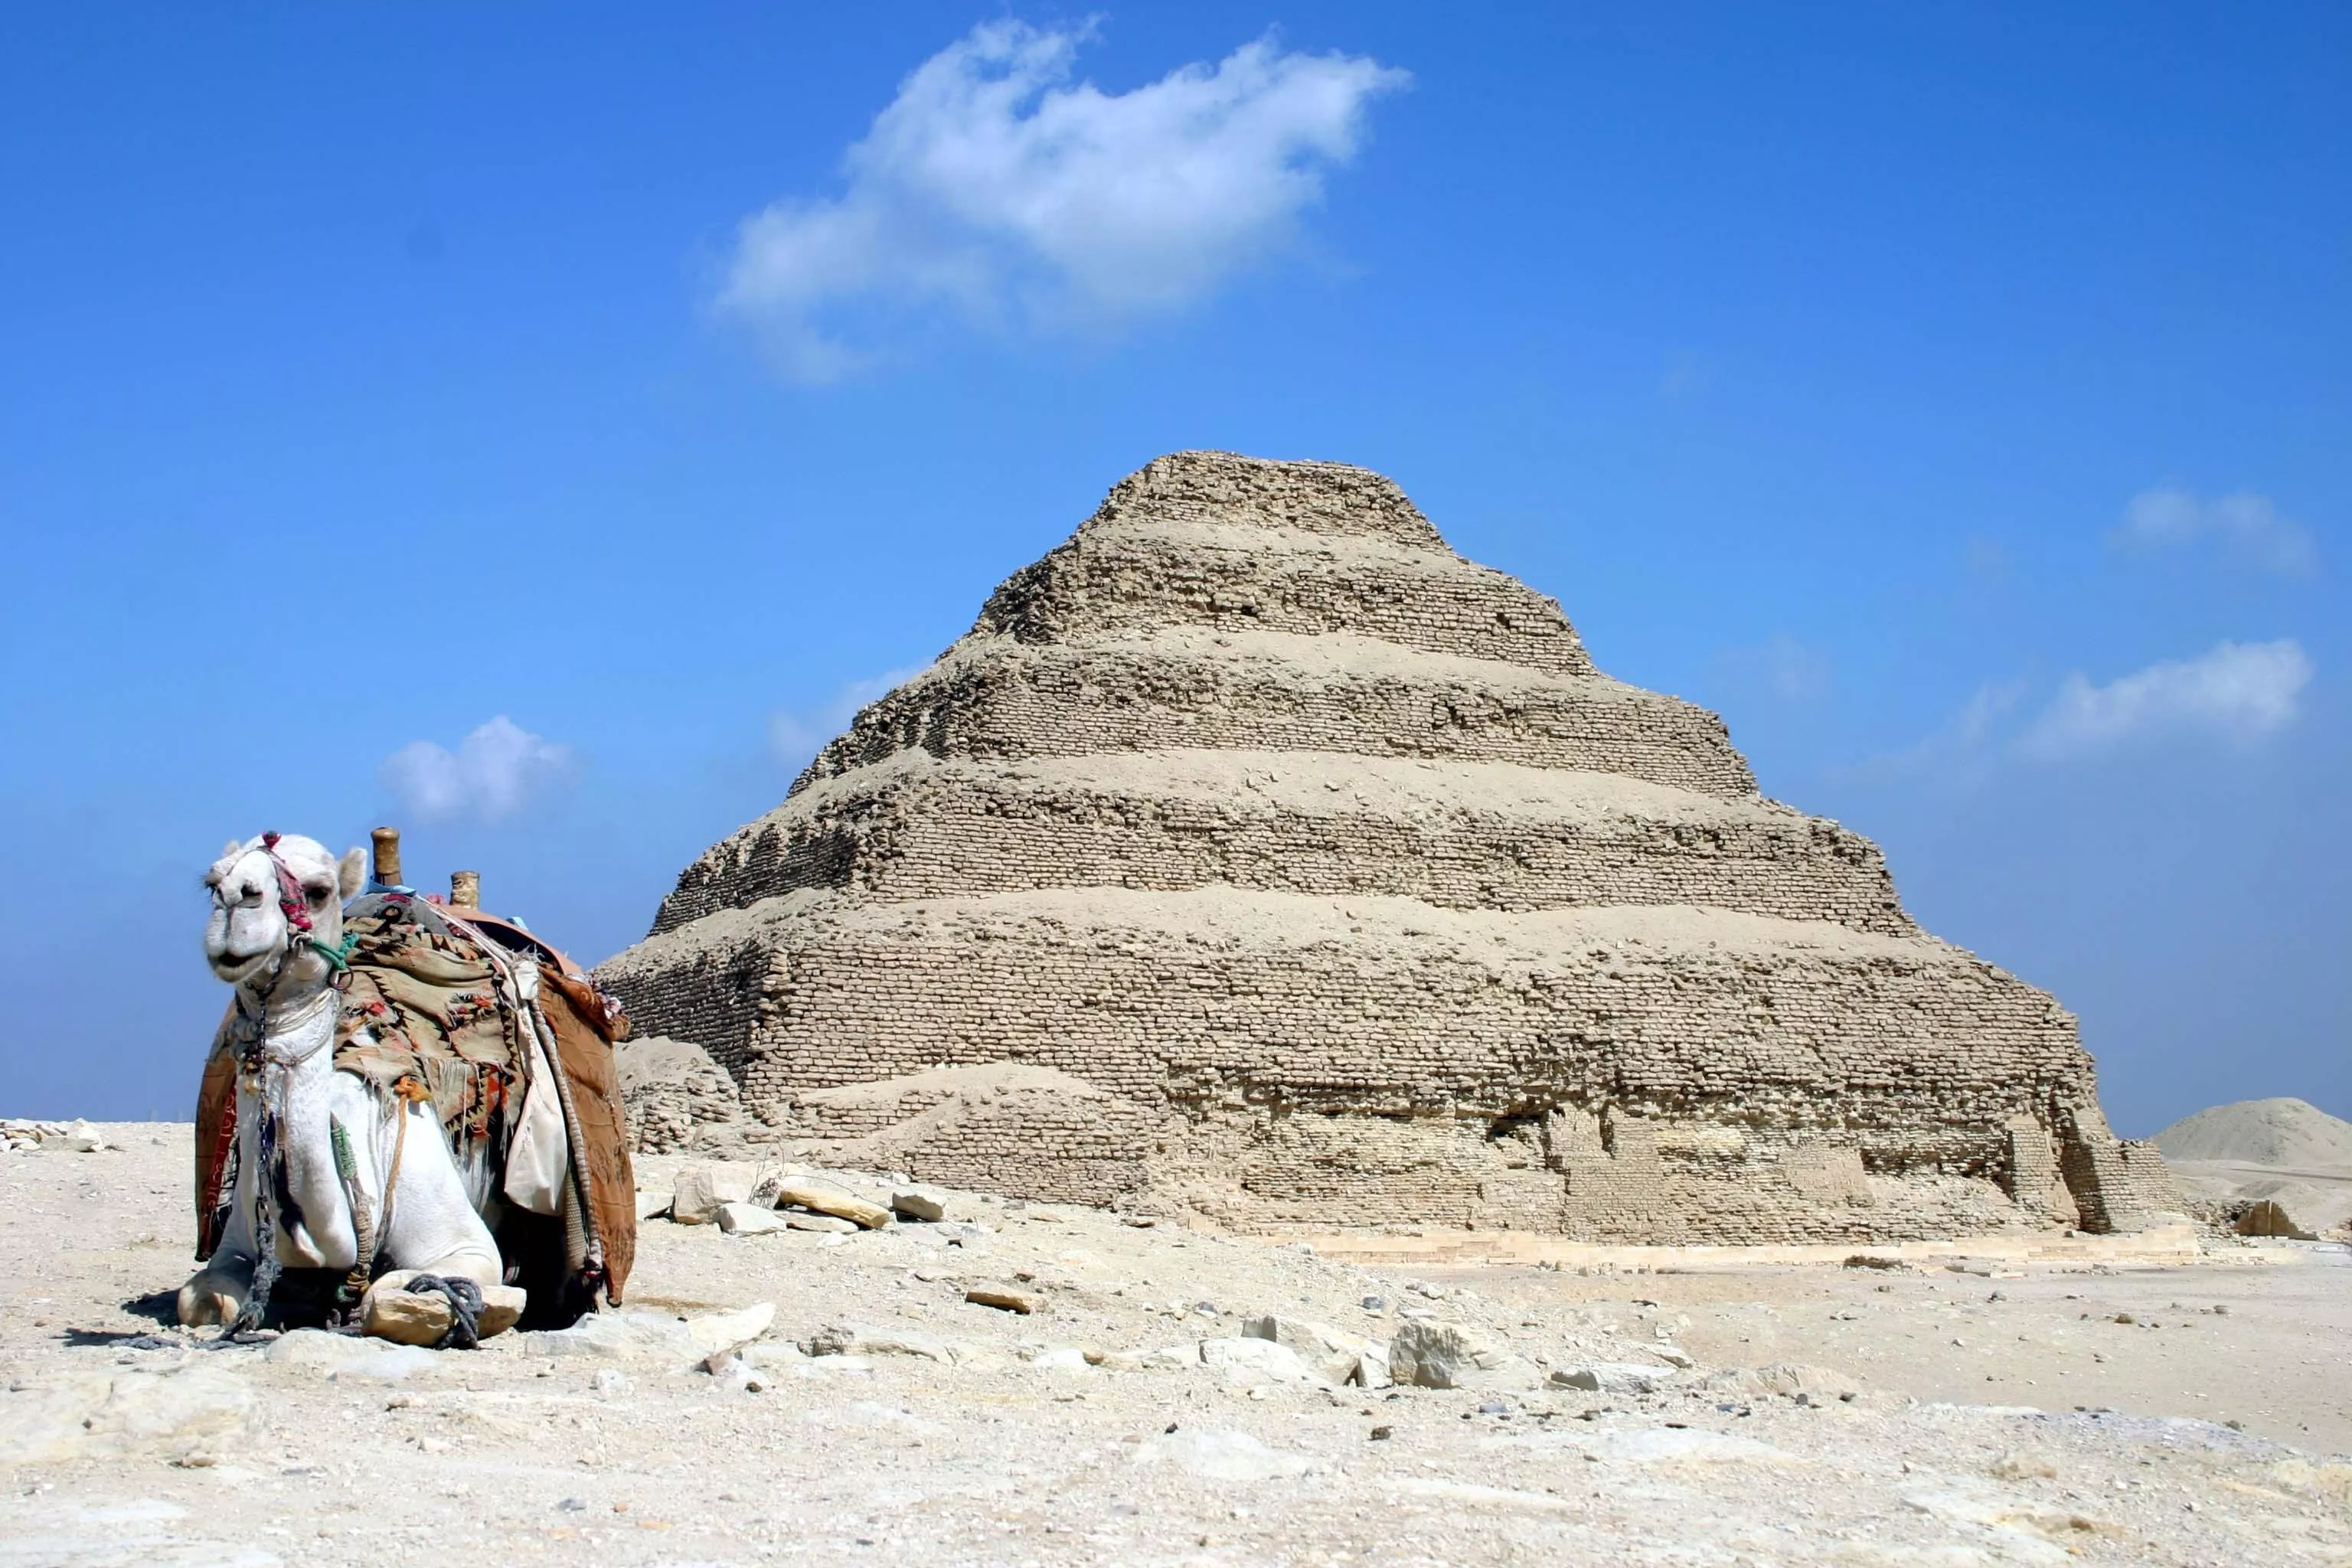 السياحة في مصر: إن سافرتِ إليها، فلا تفوّتي زيارت أبرز الاماكن السياحية